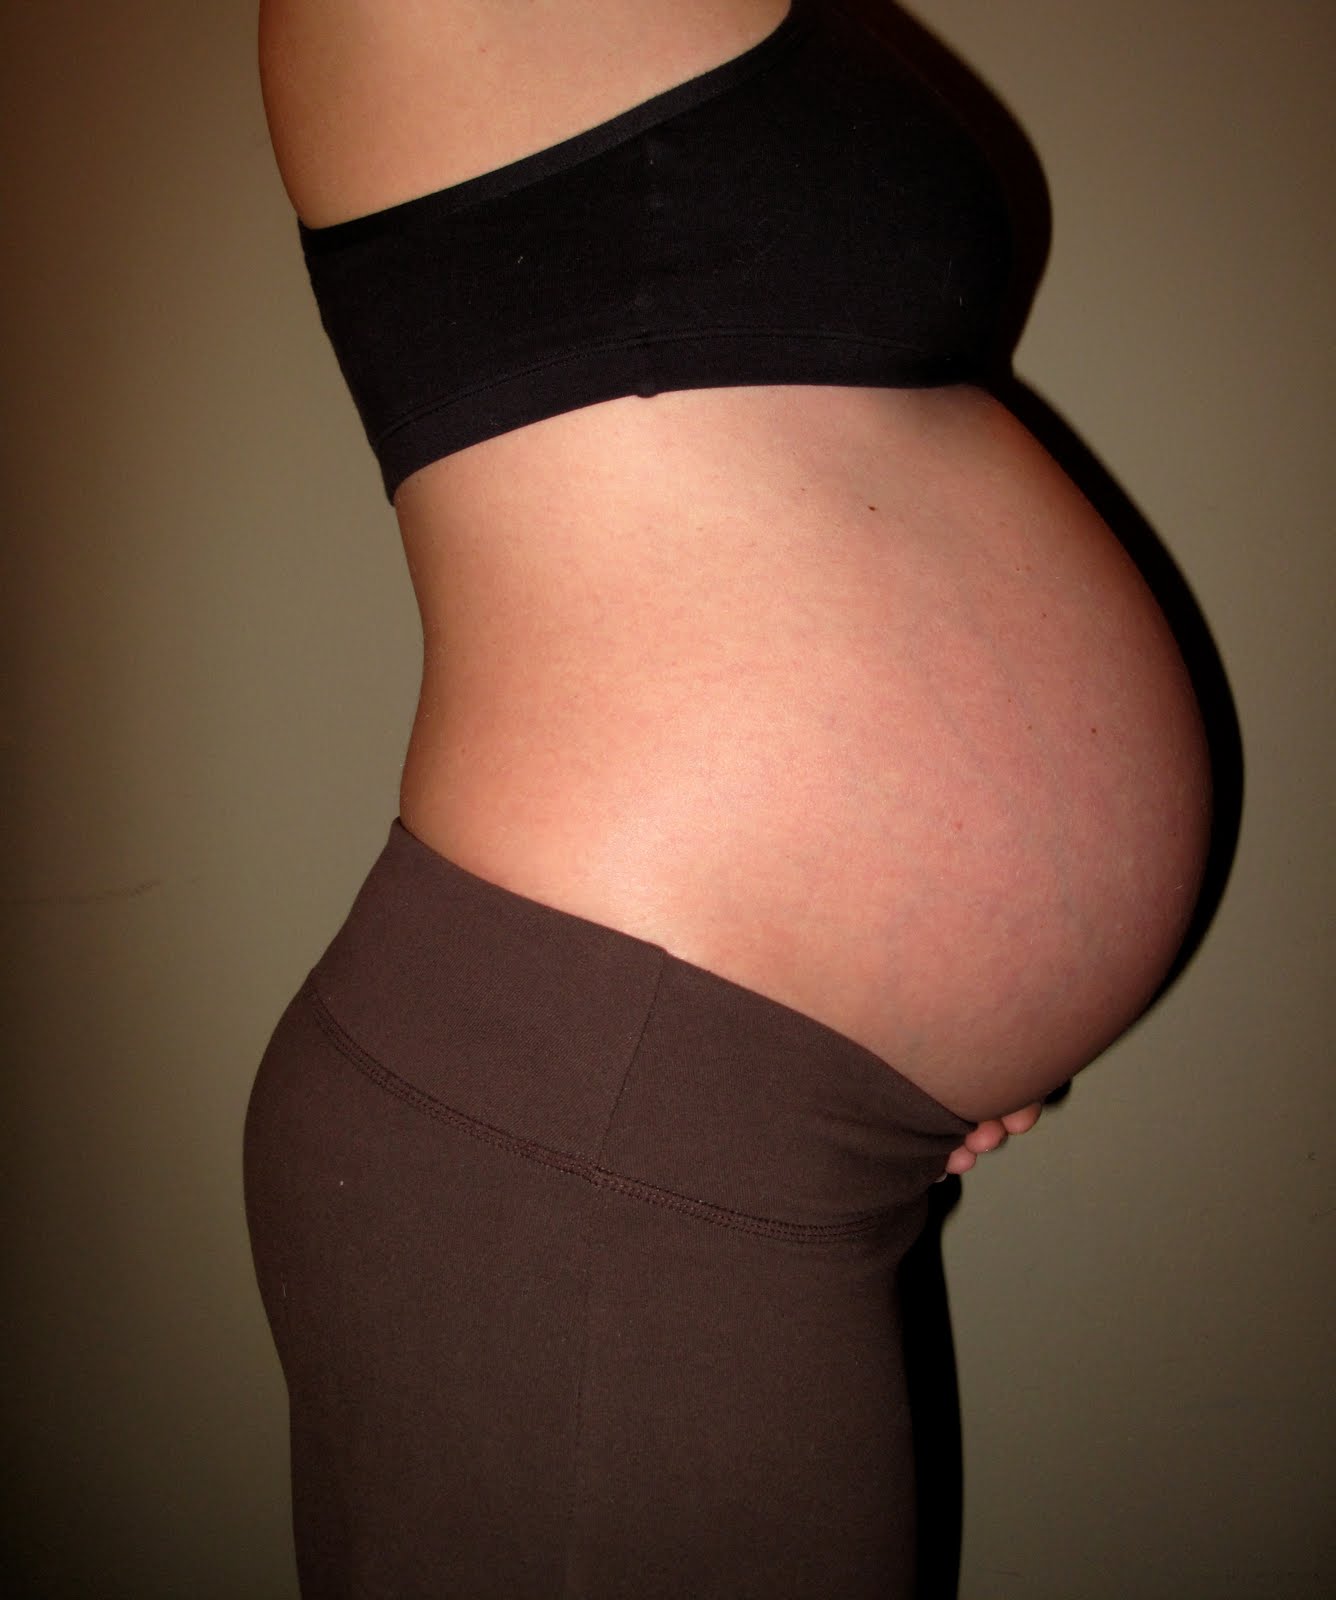 26 неделя схватки. Живот на 26 неделе беременности. Животик на 26 неделе беременности. Живот на 26 неделе беременности фото. Живот на 25-26 неделе беременности.